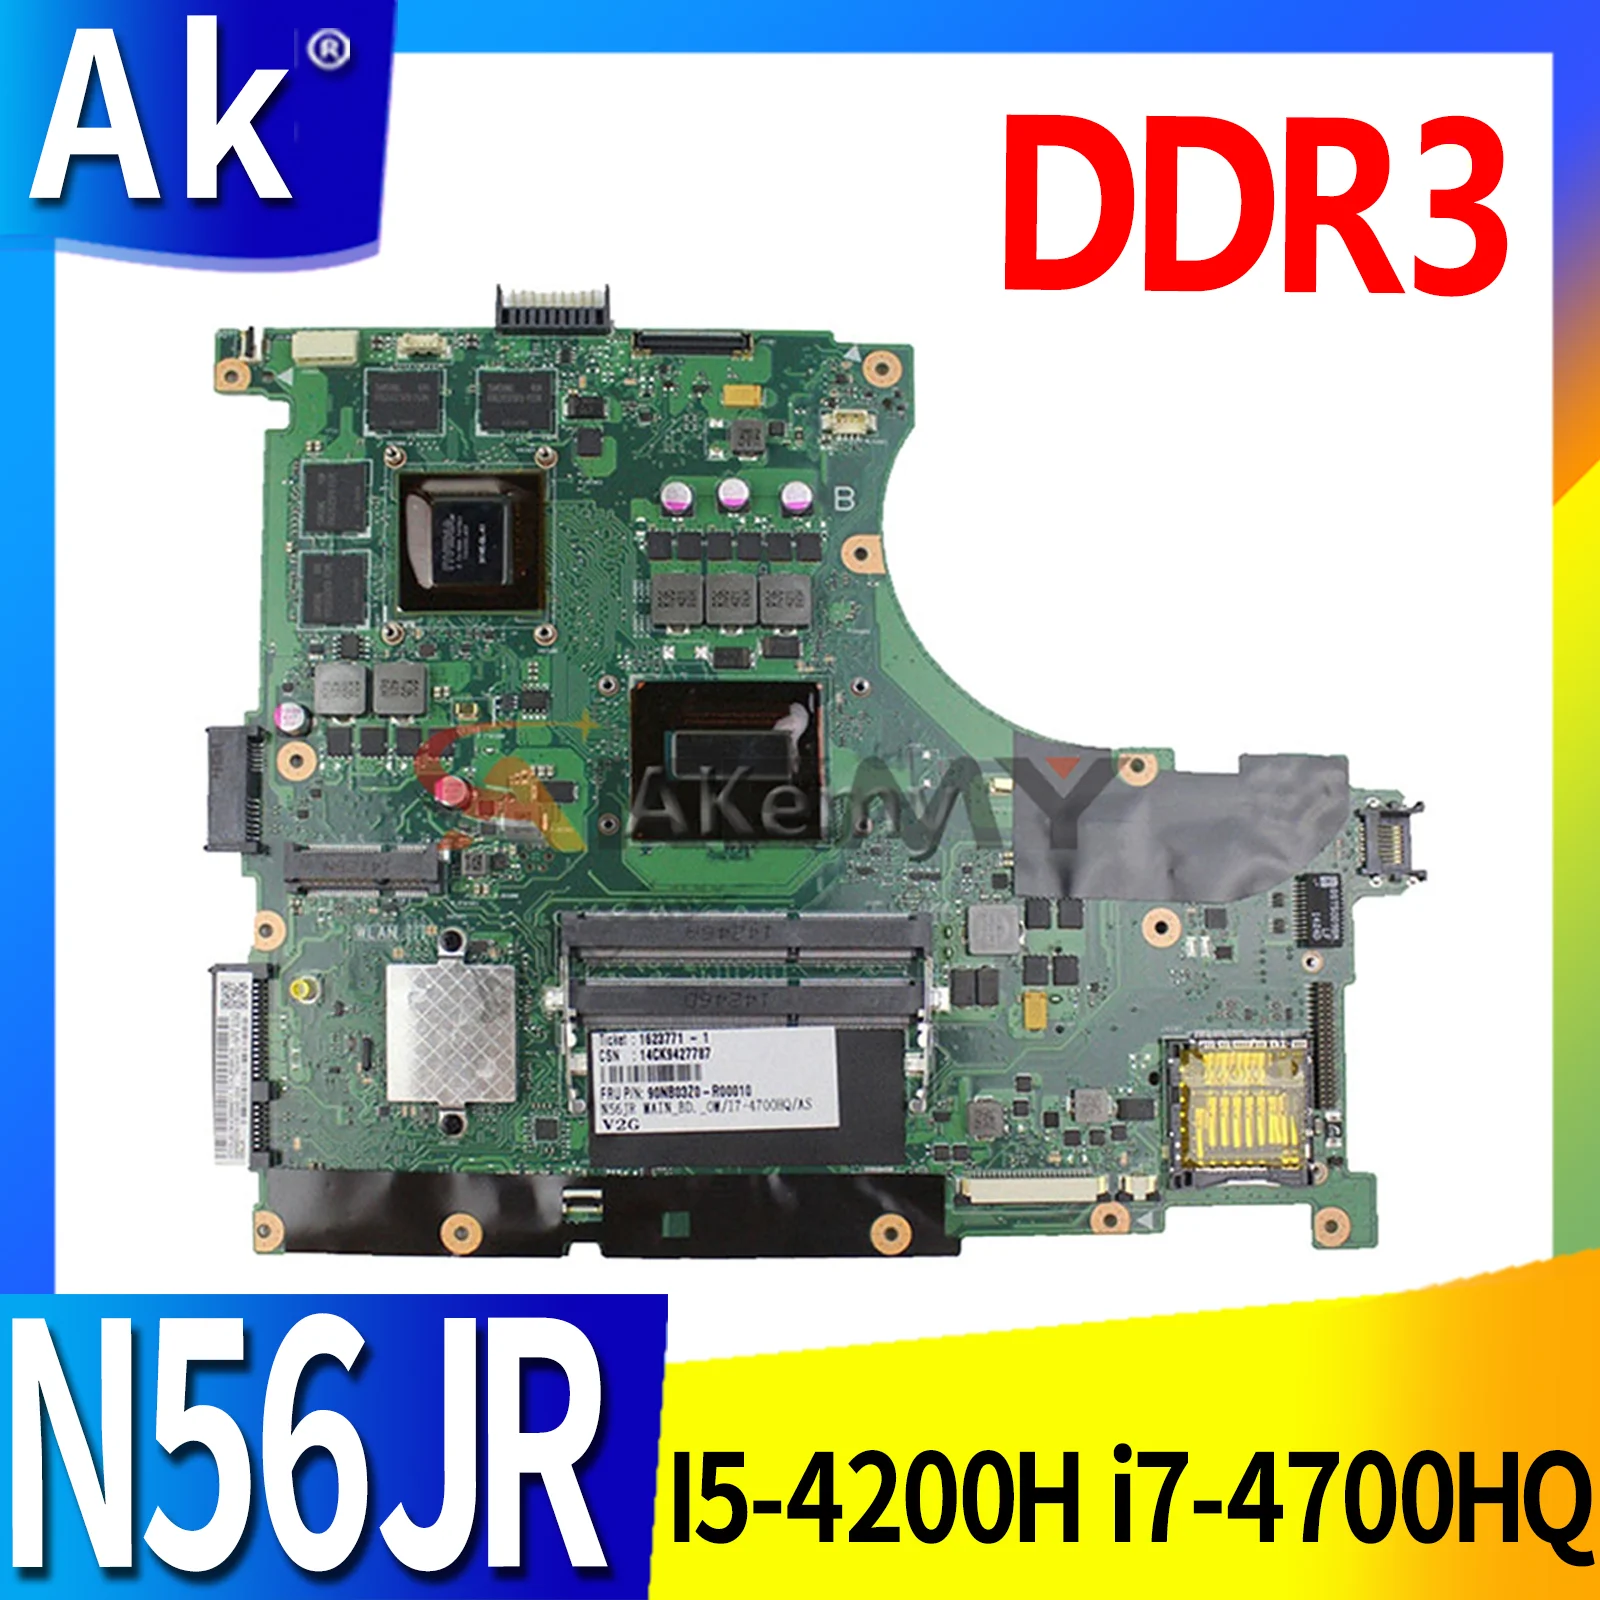 

N56JR Motherboard For ASUS Rog N56J G56J G56JR G56JK N56JK N56JR Laptop Mainboard Motherboard I5-4200H i7-4700HQ DDR3